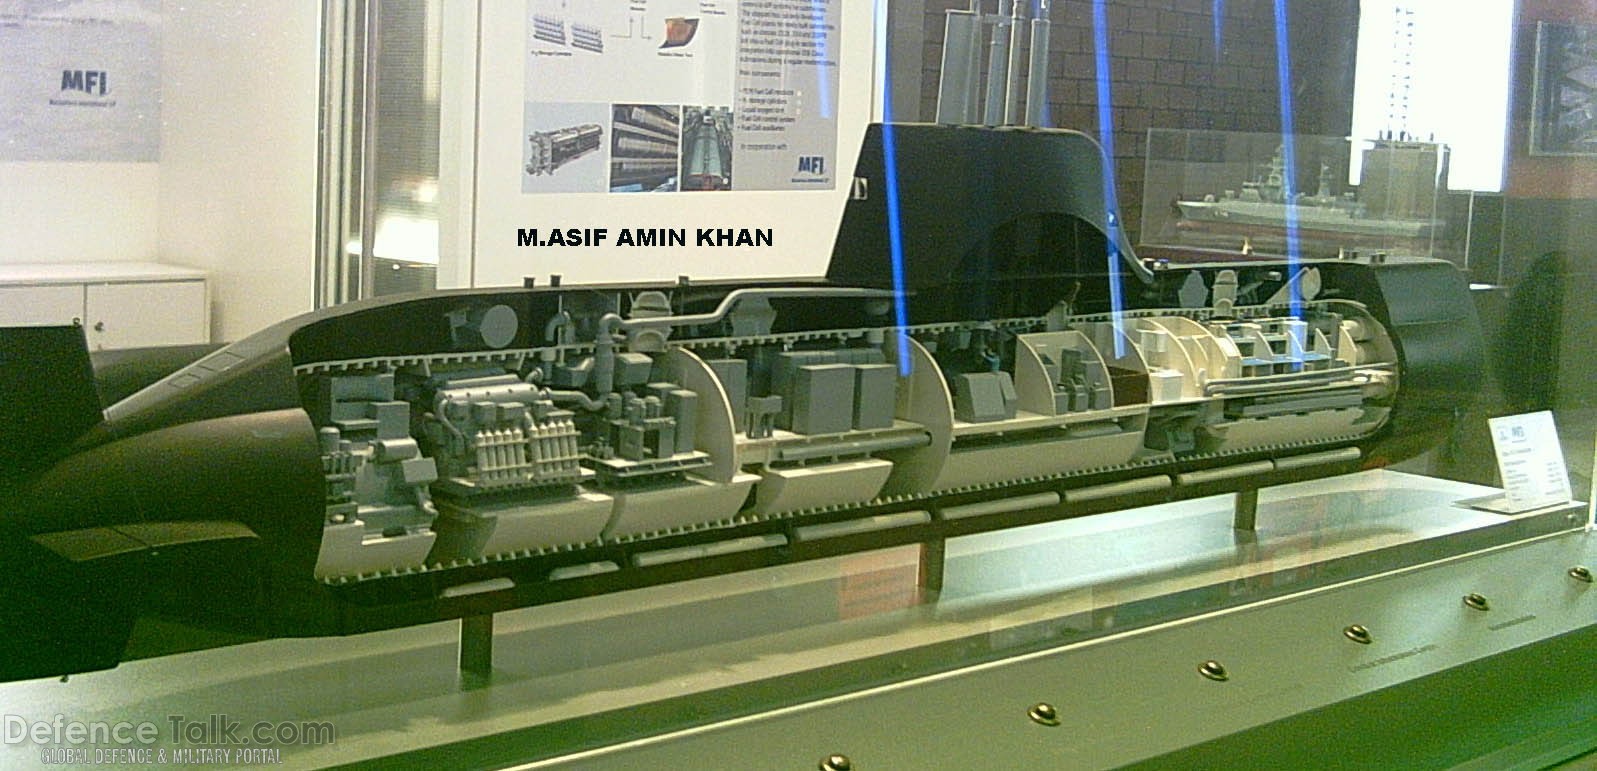 Type-214 Submarine Model - IDEAS 2006, Pakistan